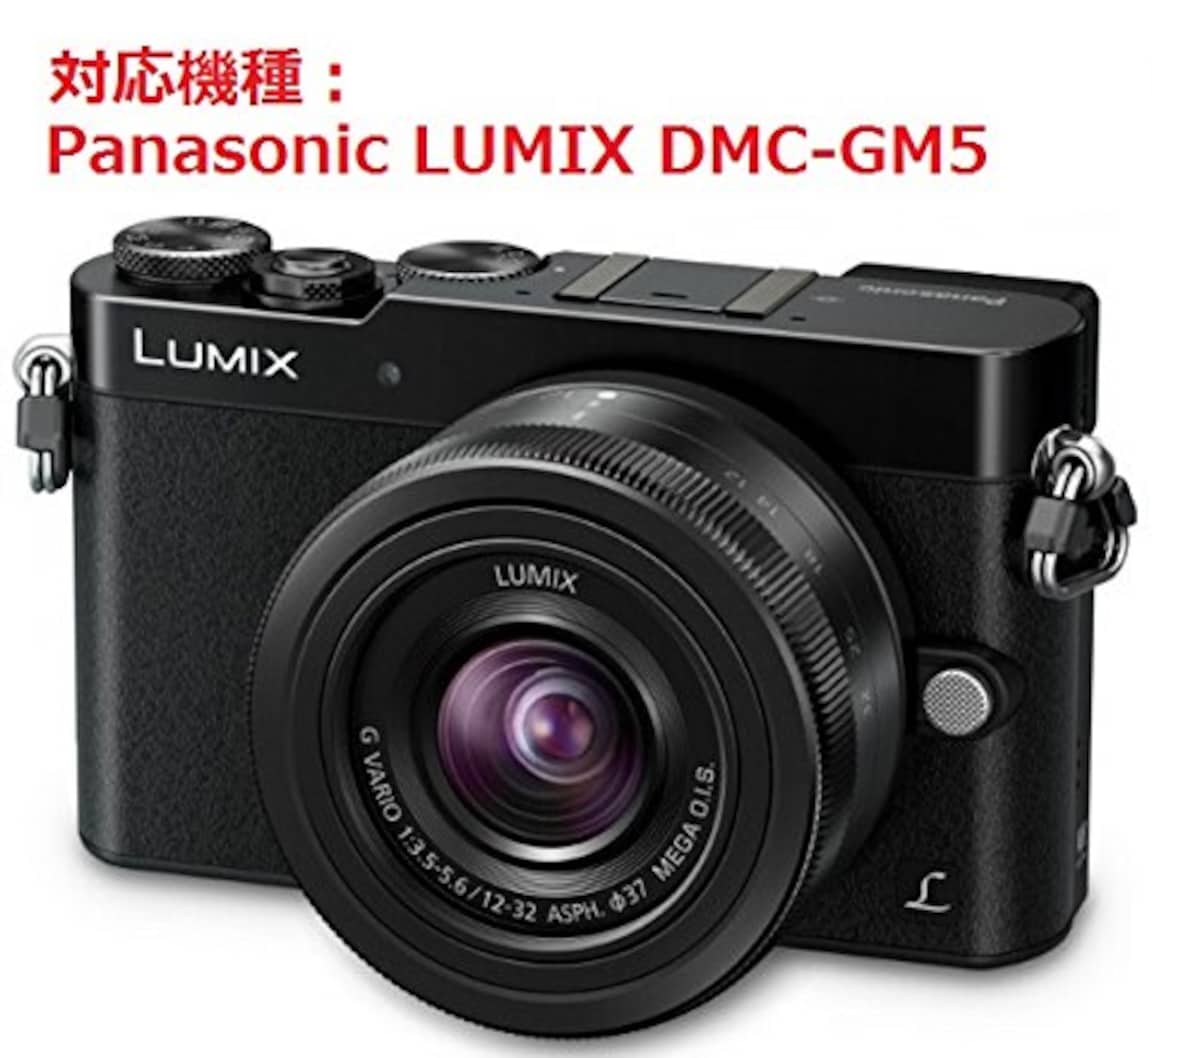  和湘堂 Panasonic LUMIX DMC-GM5用 一眼レフカメラバッグ 帆布生地 ツーレンズ収納可 軽量?丈夫?お洒落! カメラマンにお薦め! 「517-0017-02D」ブラック画像8 